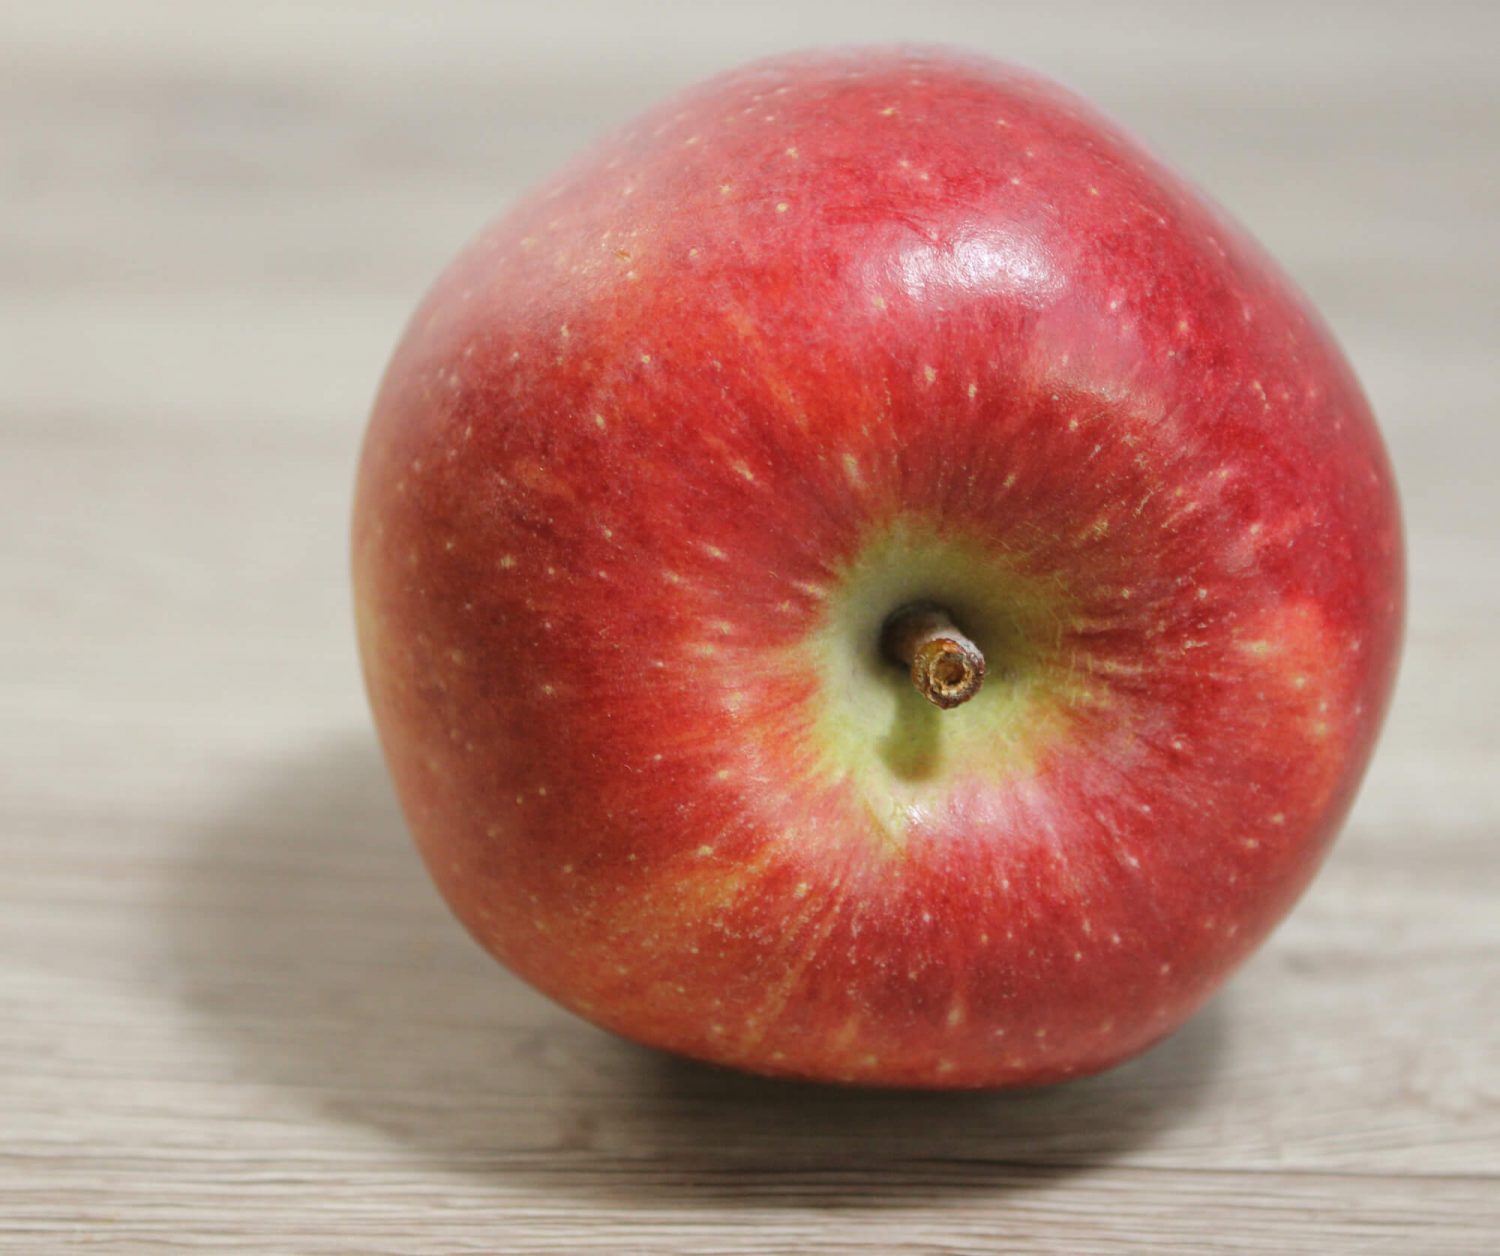 Fotovorlage: Liegender roter Apfel auf Augenhöhe von vorne